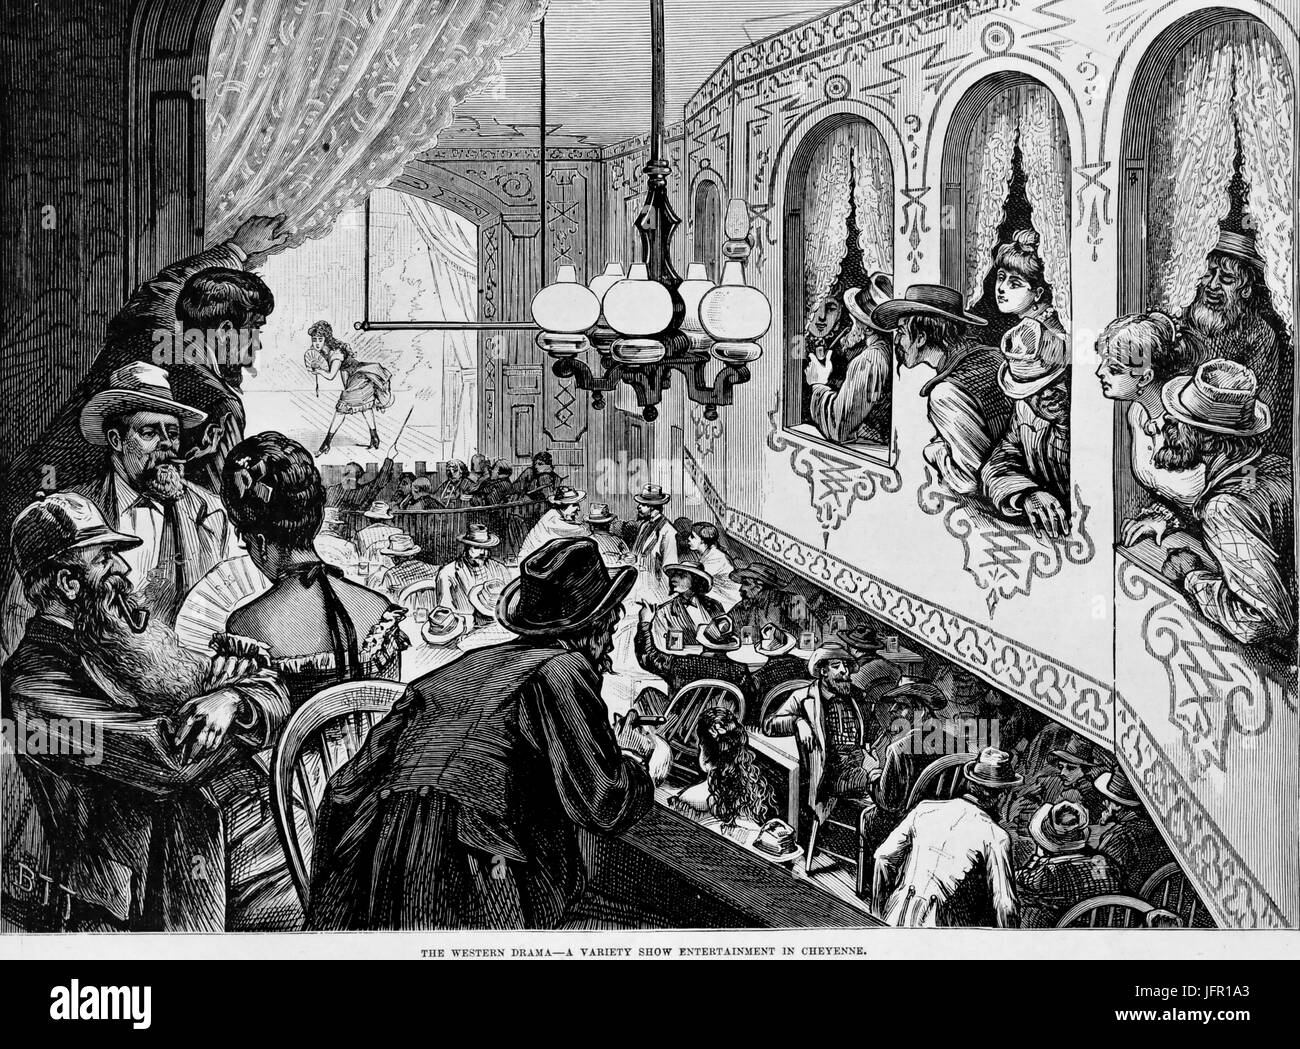 Illustration montrant un spectacle de variétés divertissements dans un saloon, Cheyenne, Wyoming, 1870. Banque D'Images